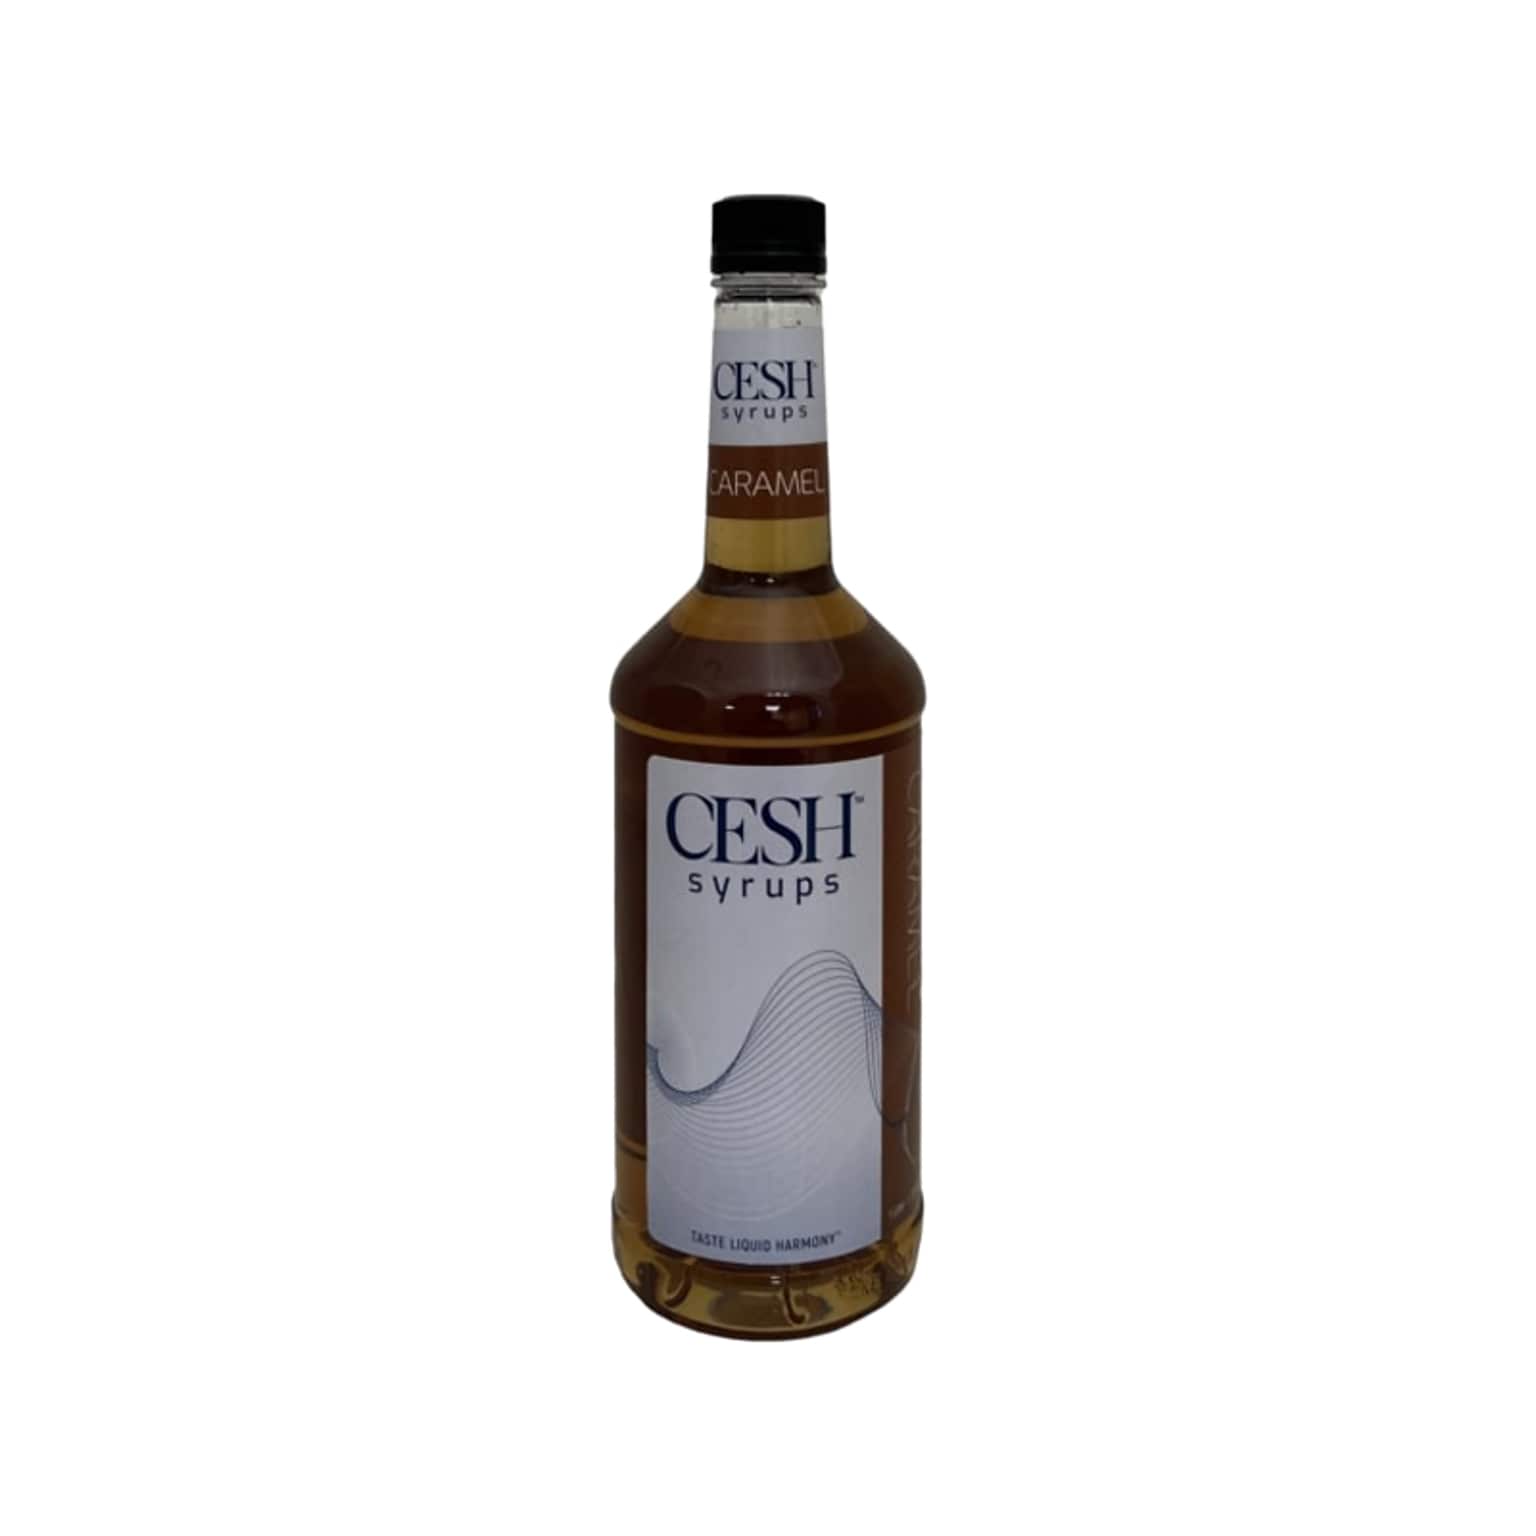 CESH Caramel Syrup, 2/Carton (GRE79194)